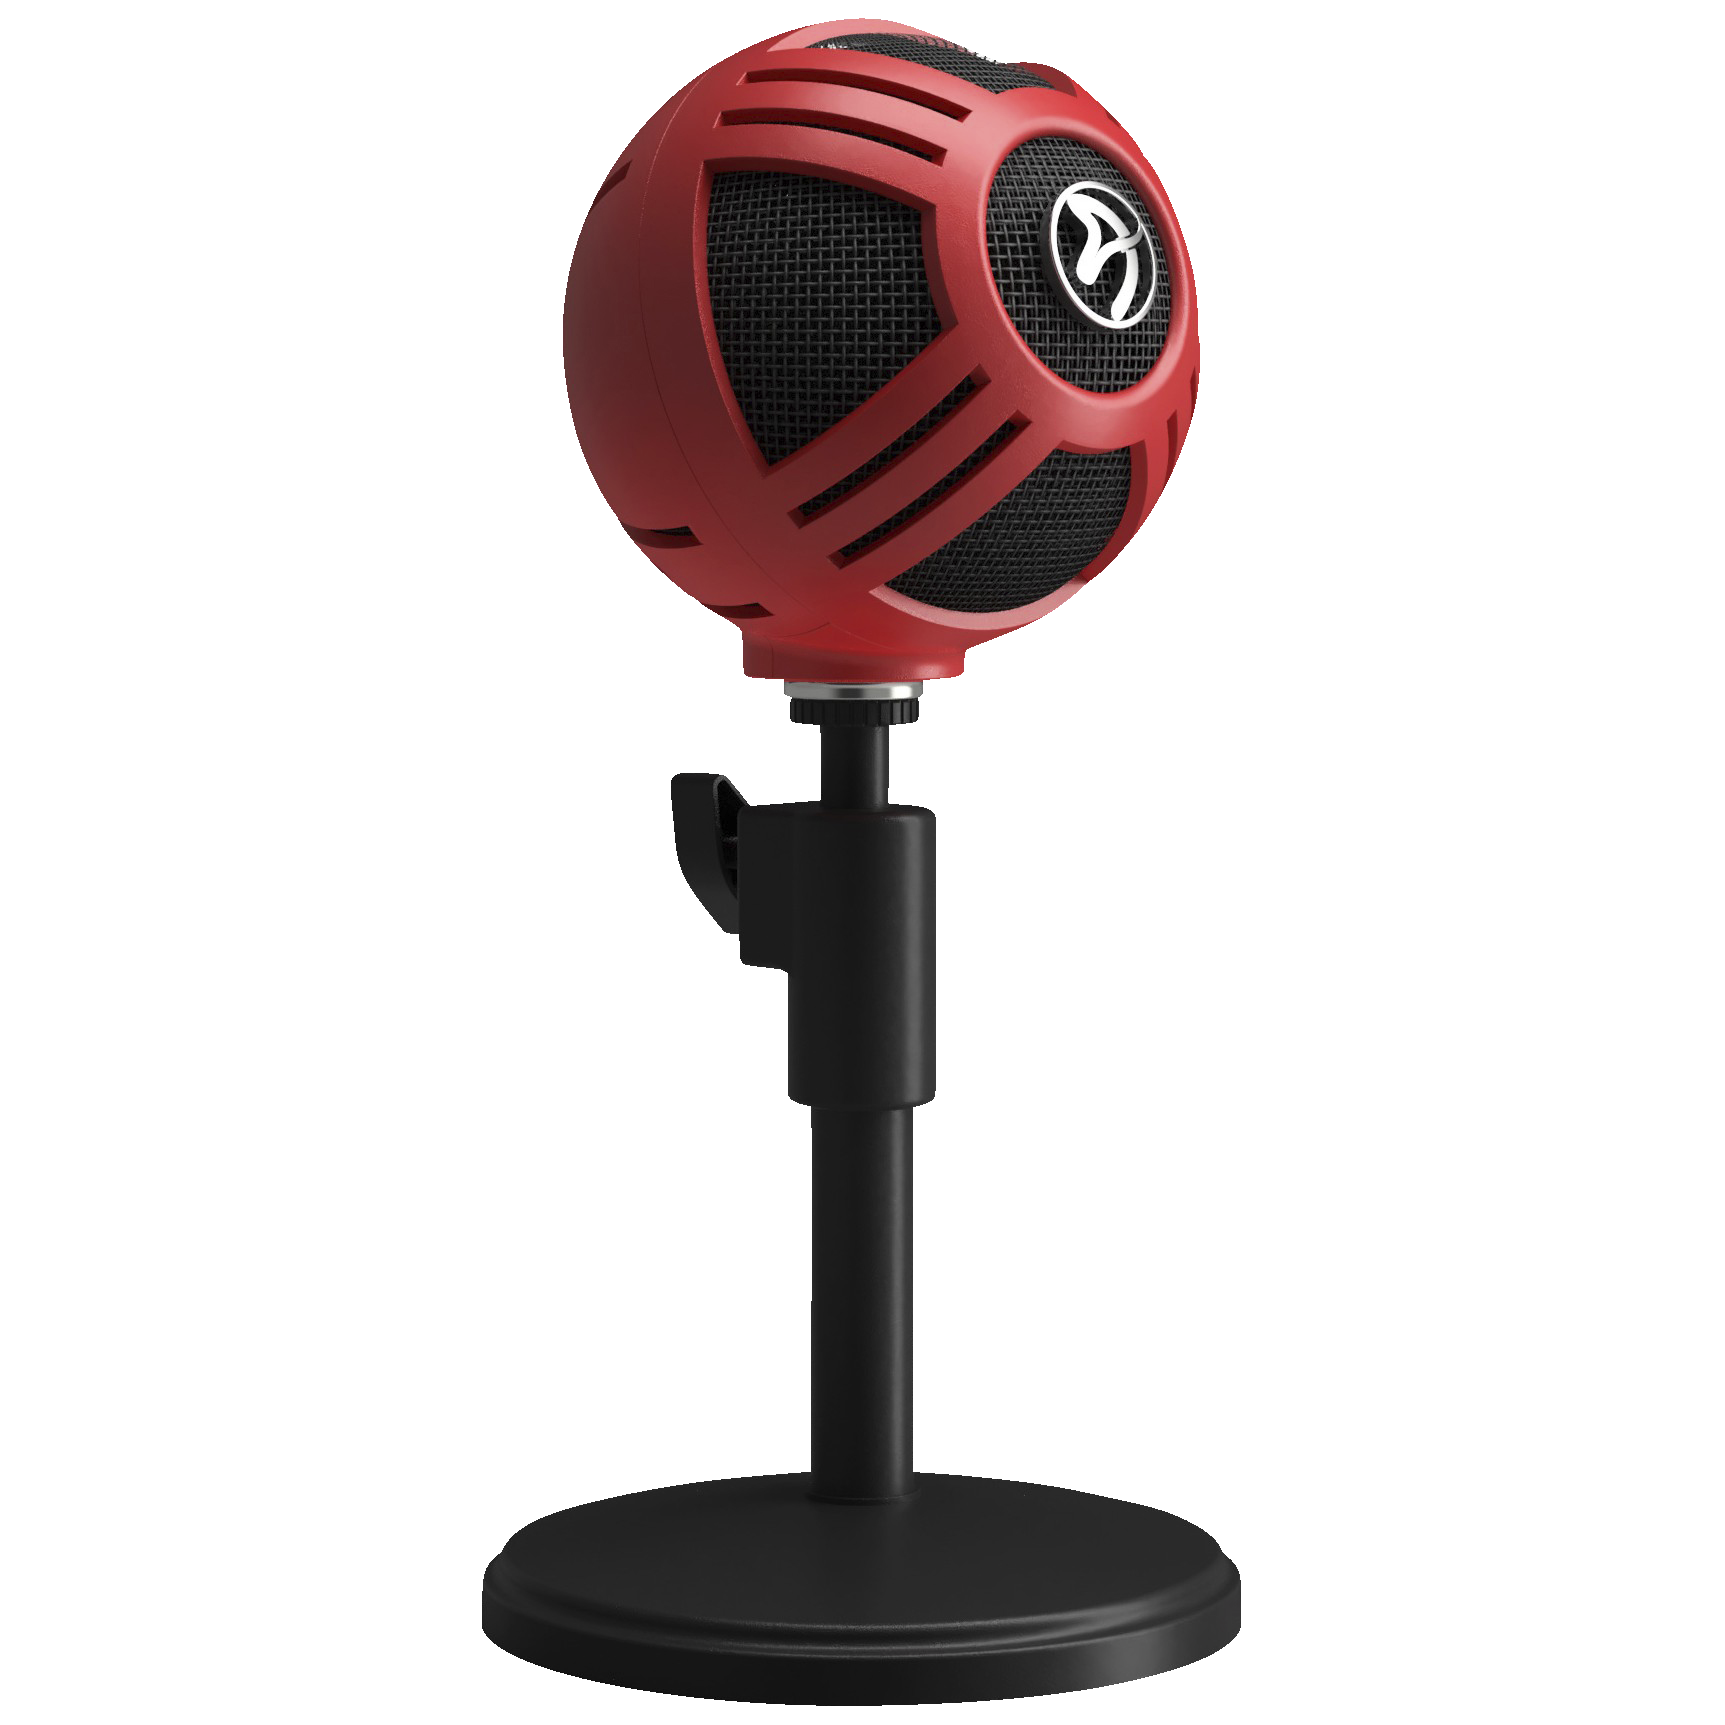 Arozzi Sfera mikrofon (rød) - Mikrofon - Elgiganten